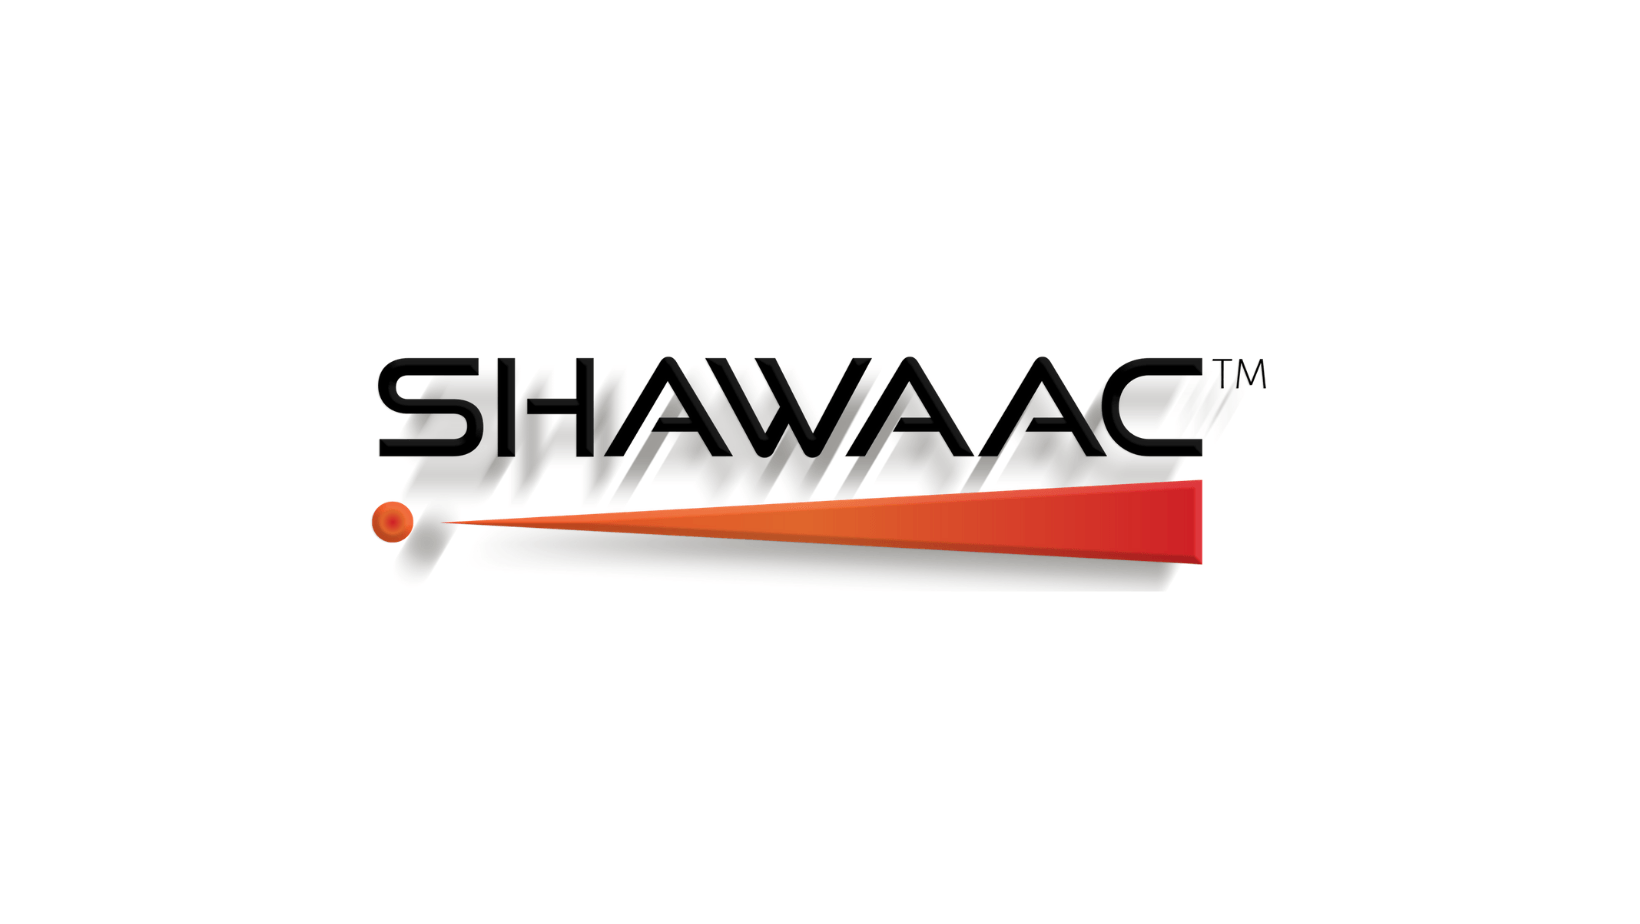 www.shawaac.com